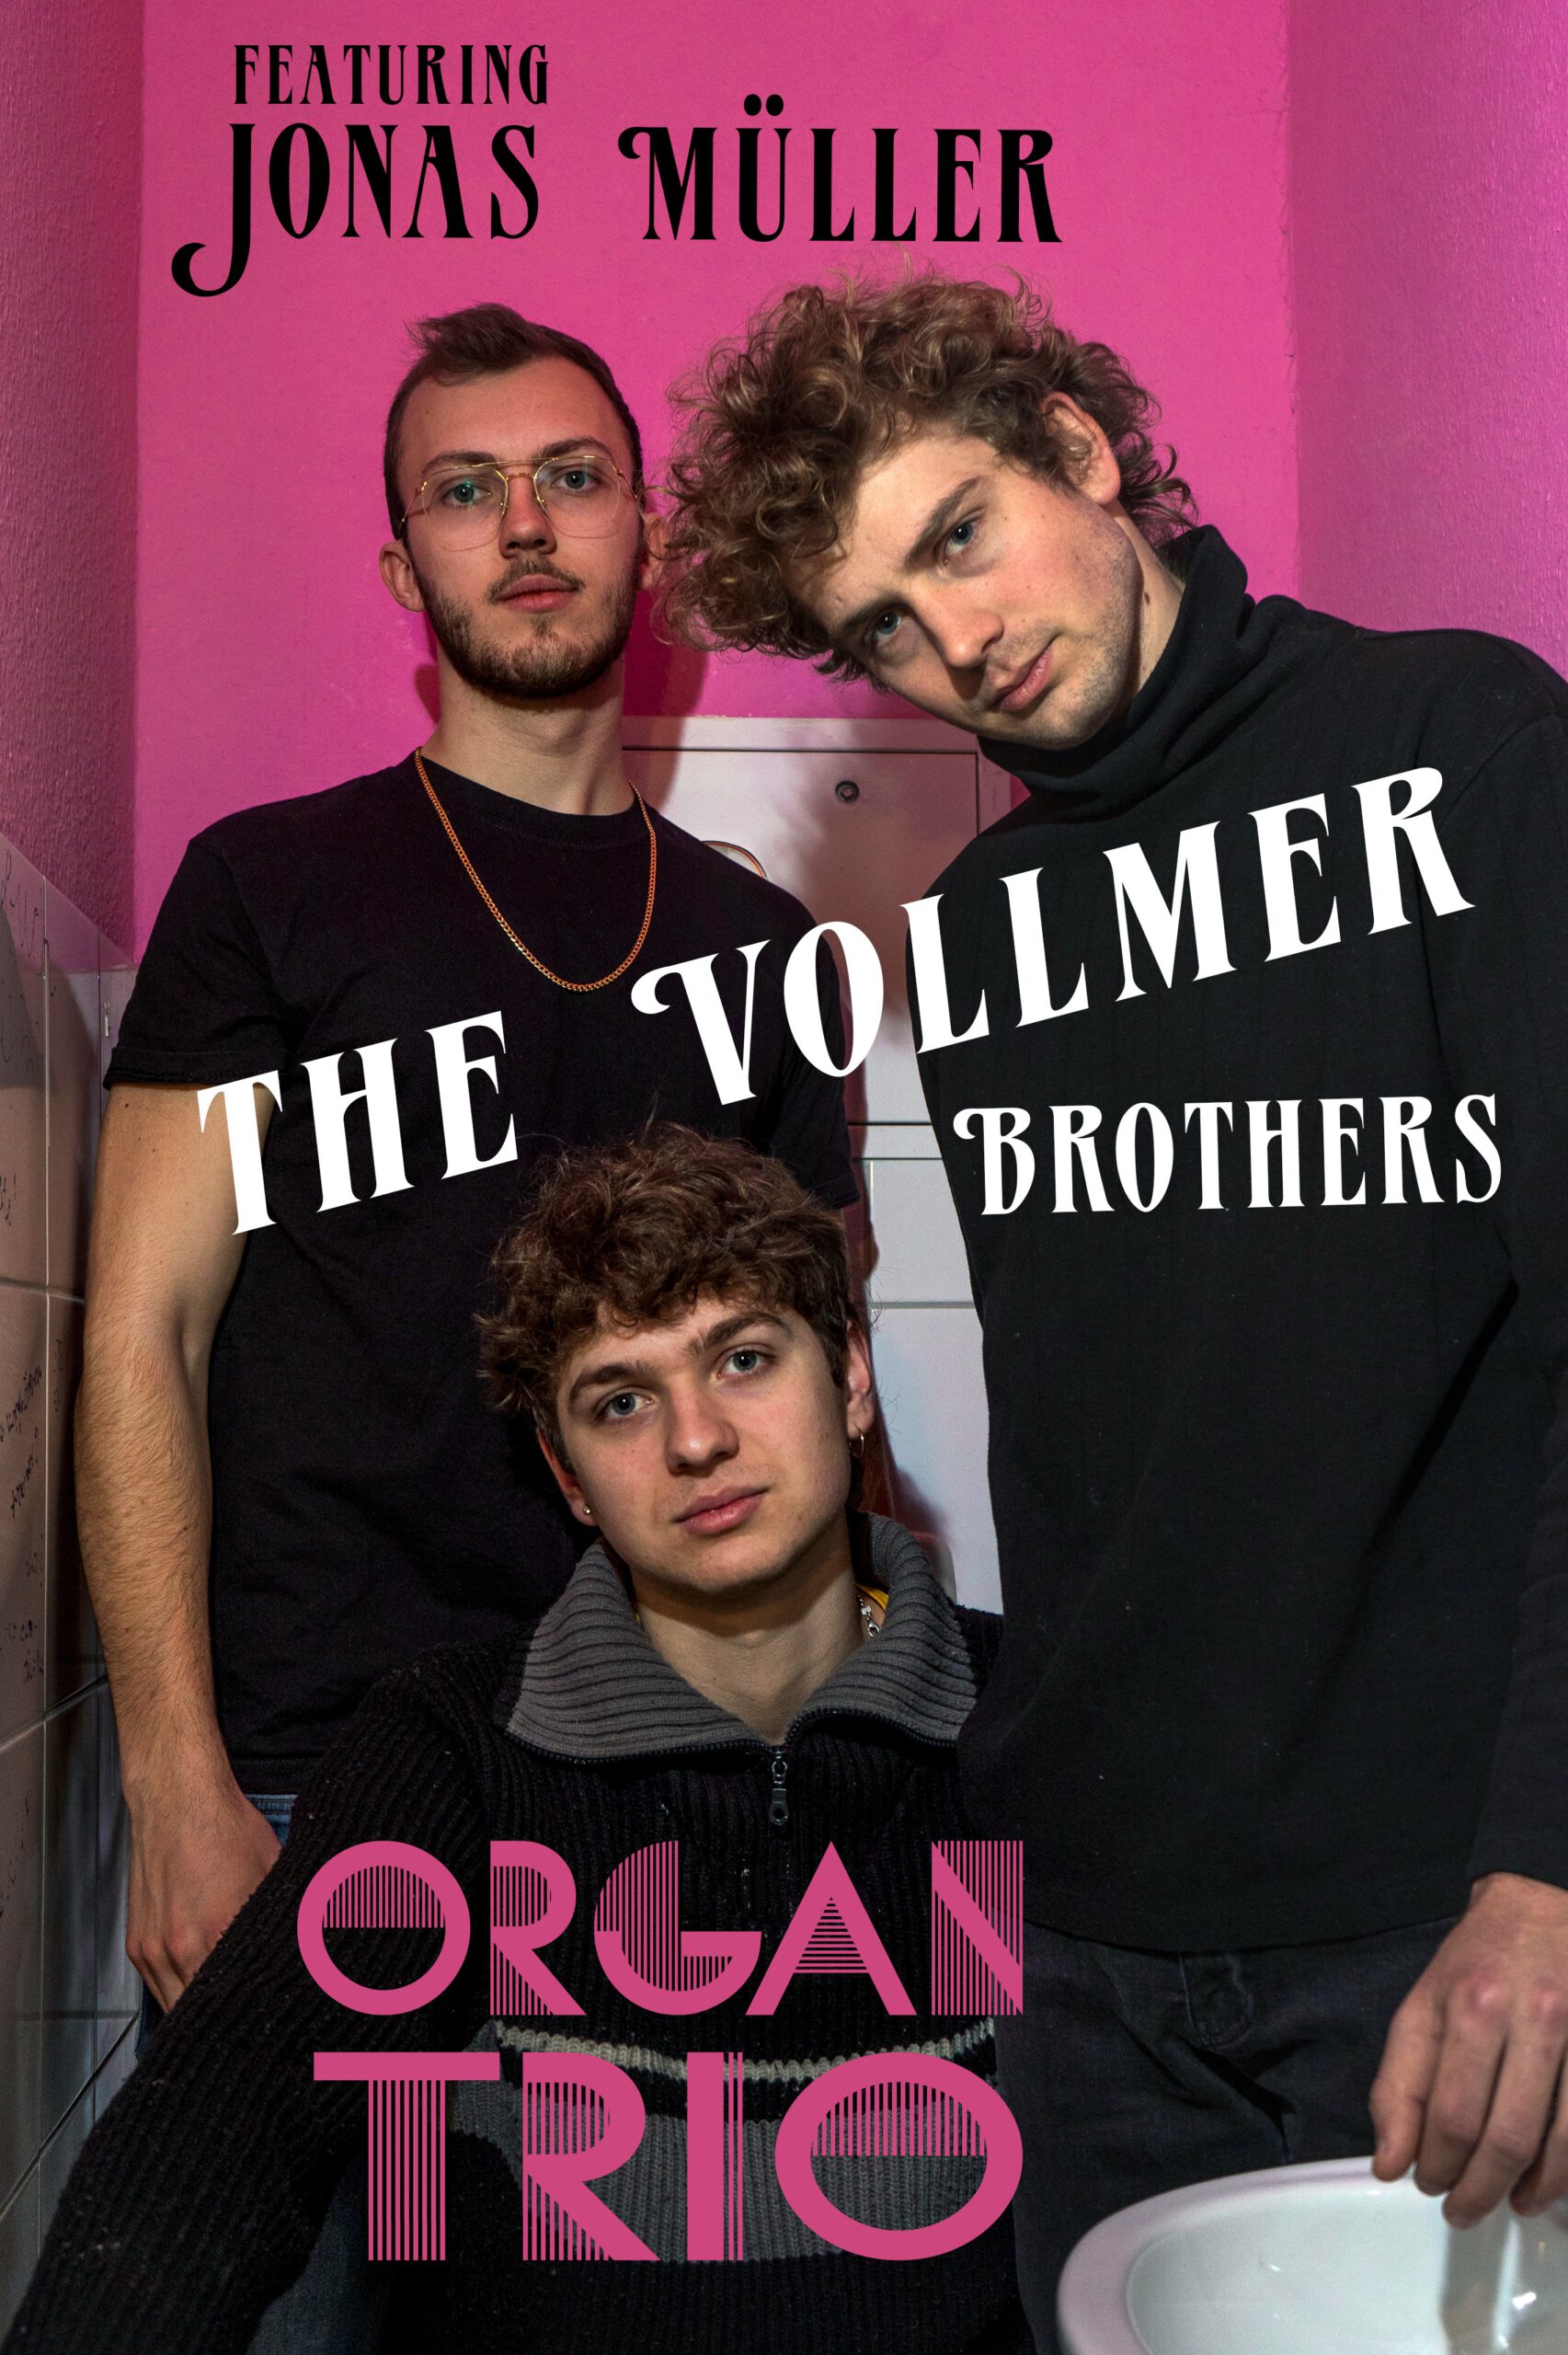 Vollmer Bros. Organ Trio